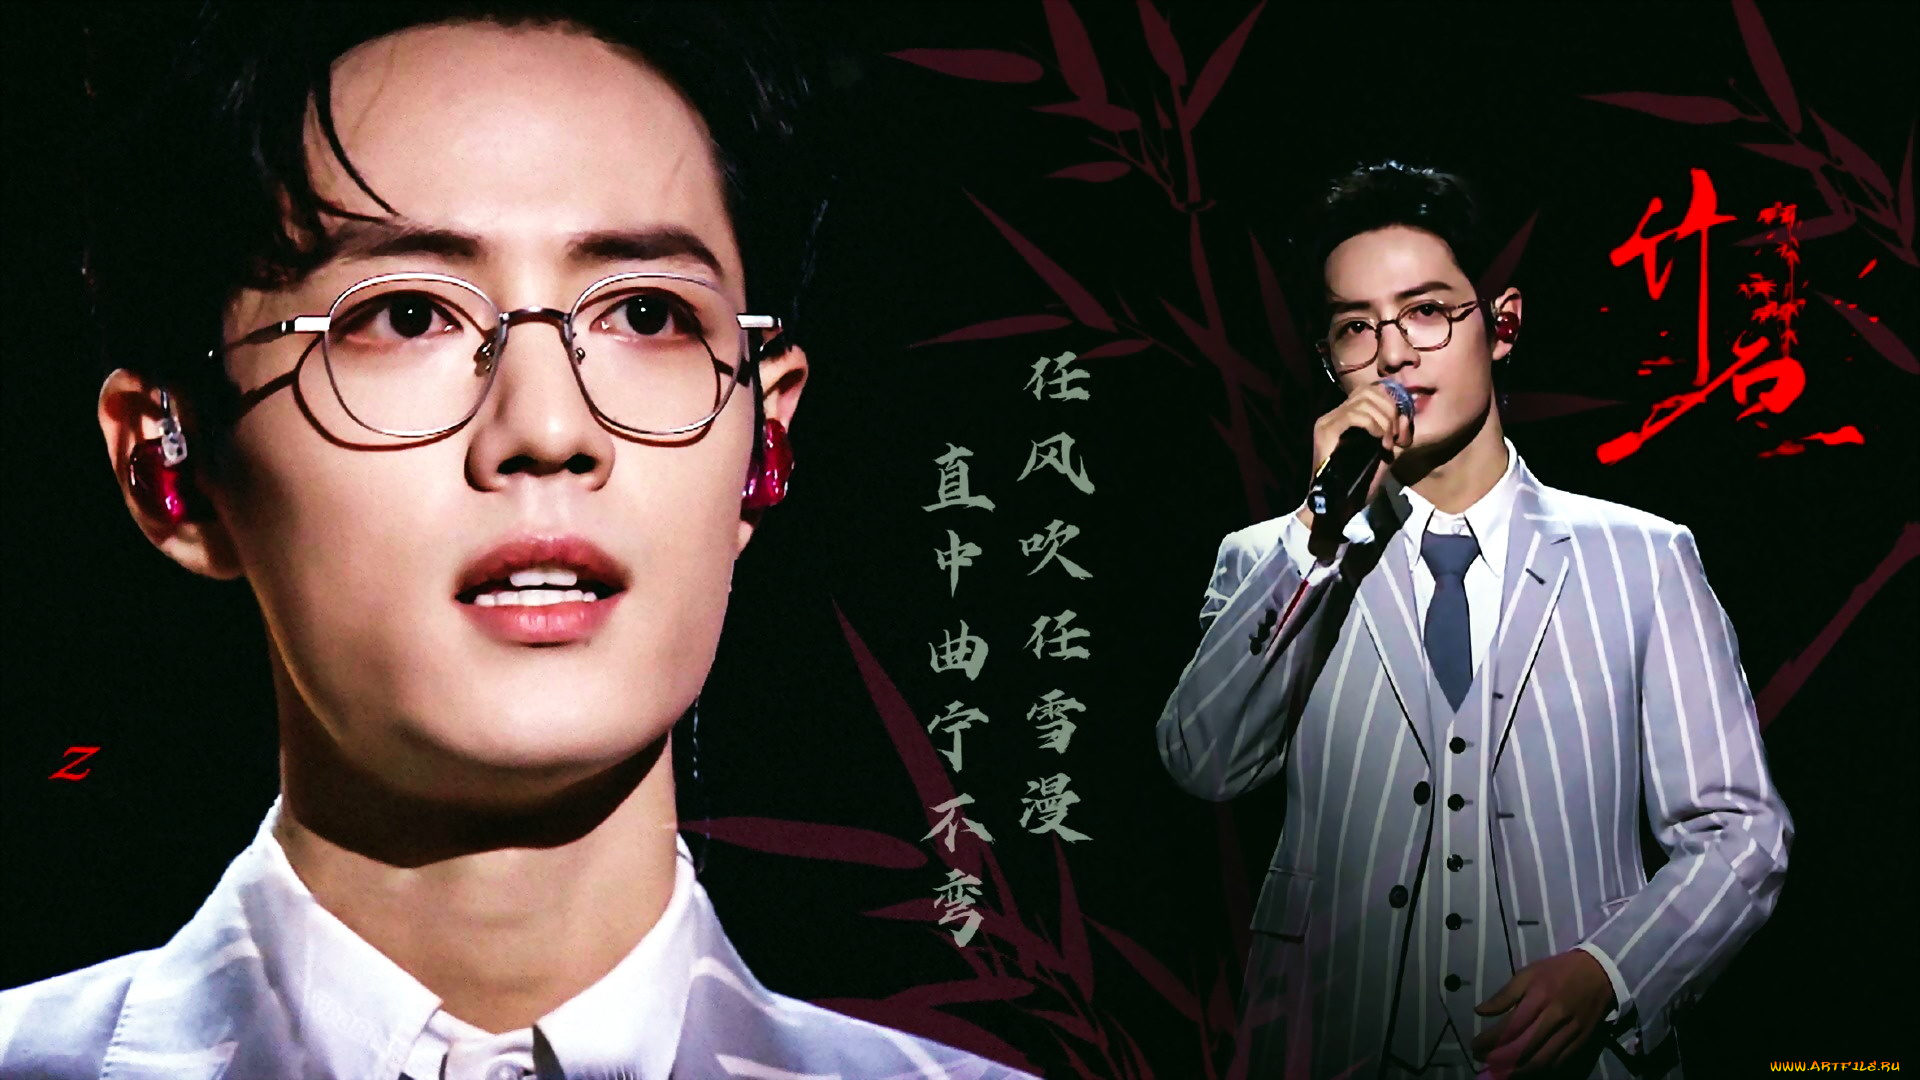 мужчины, xiao, zhan, актер, лицо, очки, костюм, микрофон